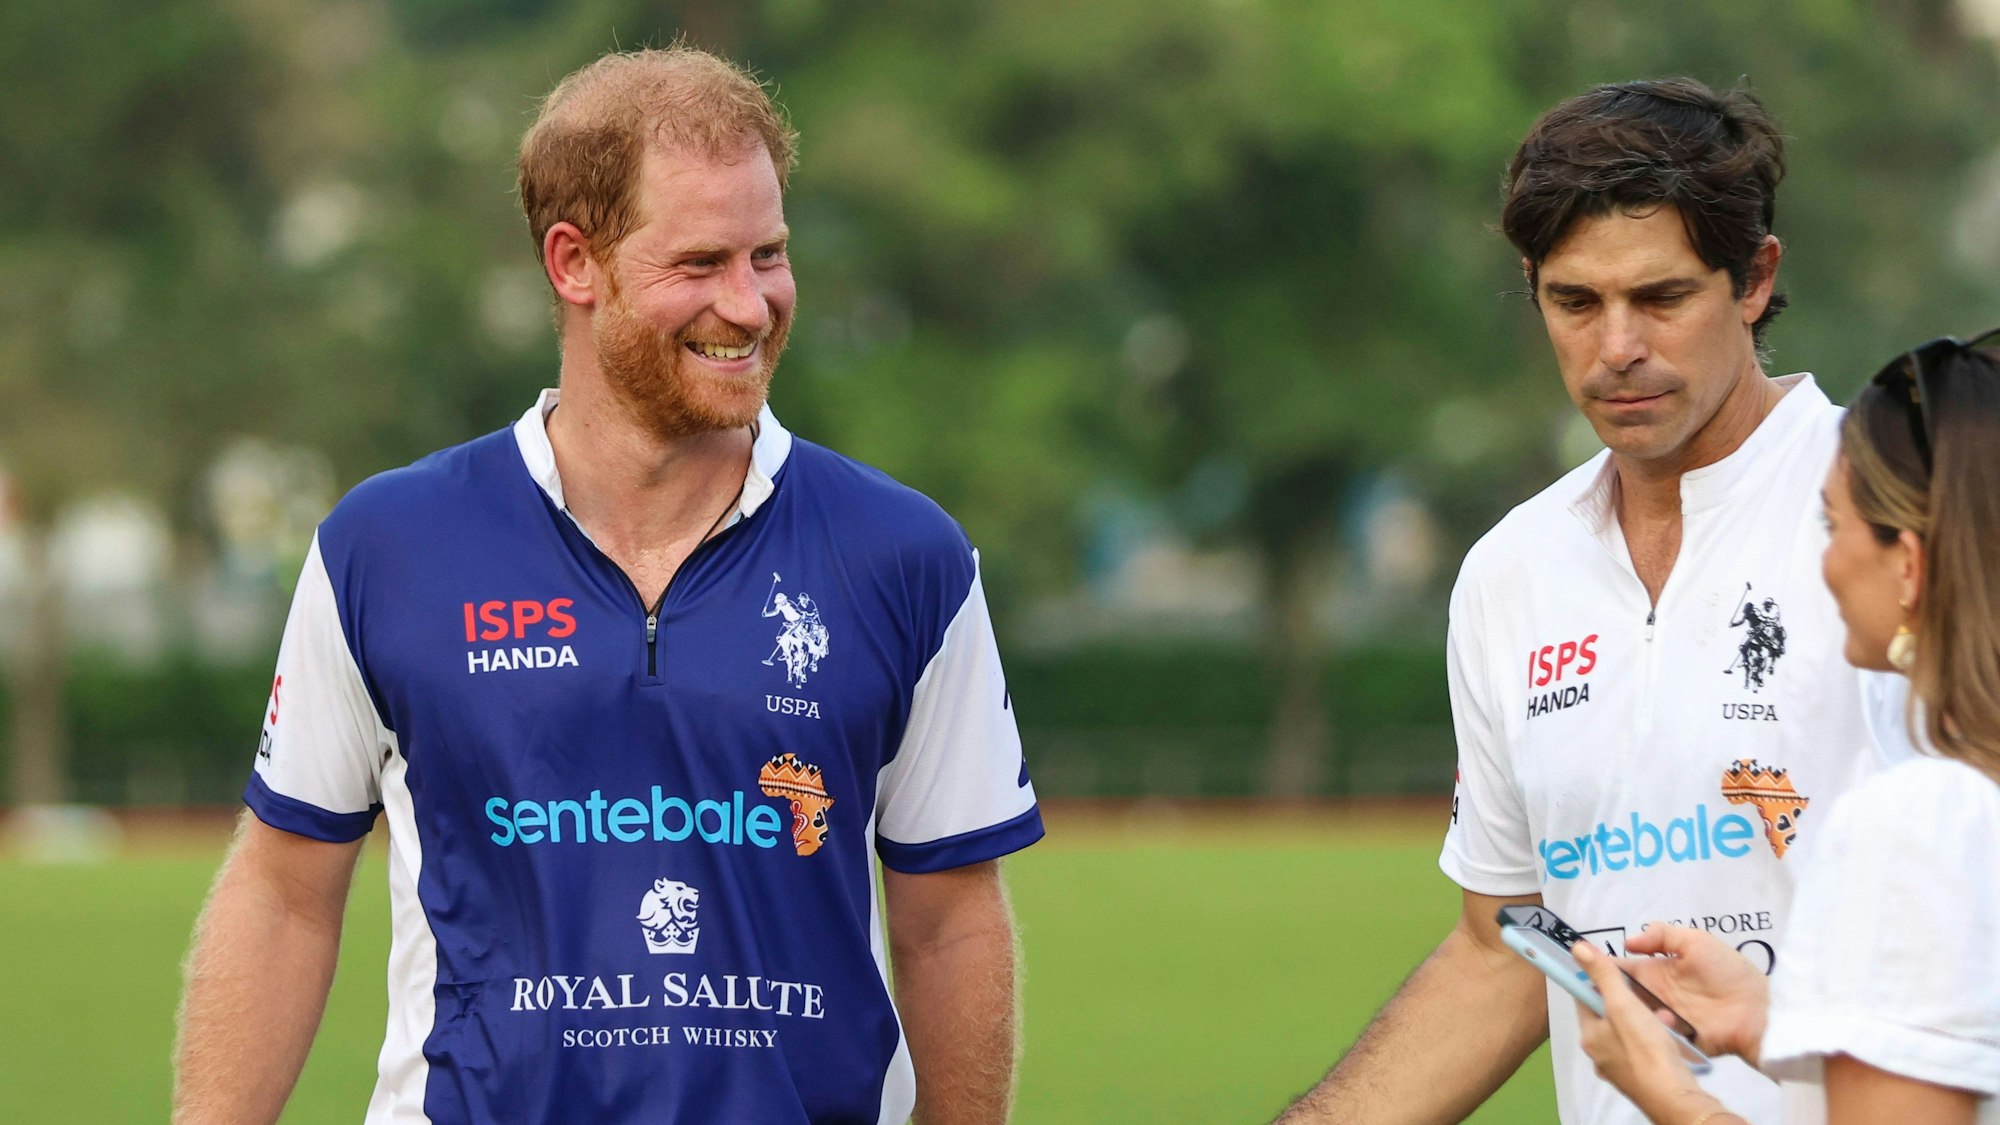 Der britische Prinz Harry lächelt nach dem Spiel beim Sentebale ISPS Handa Polo Cup in Singapur.